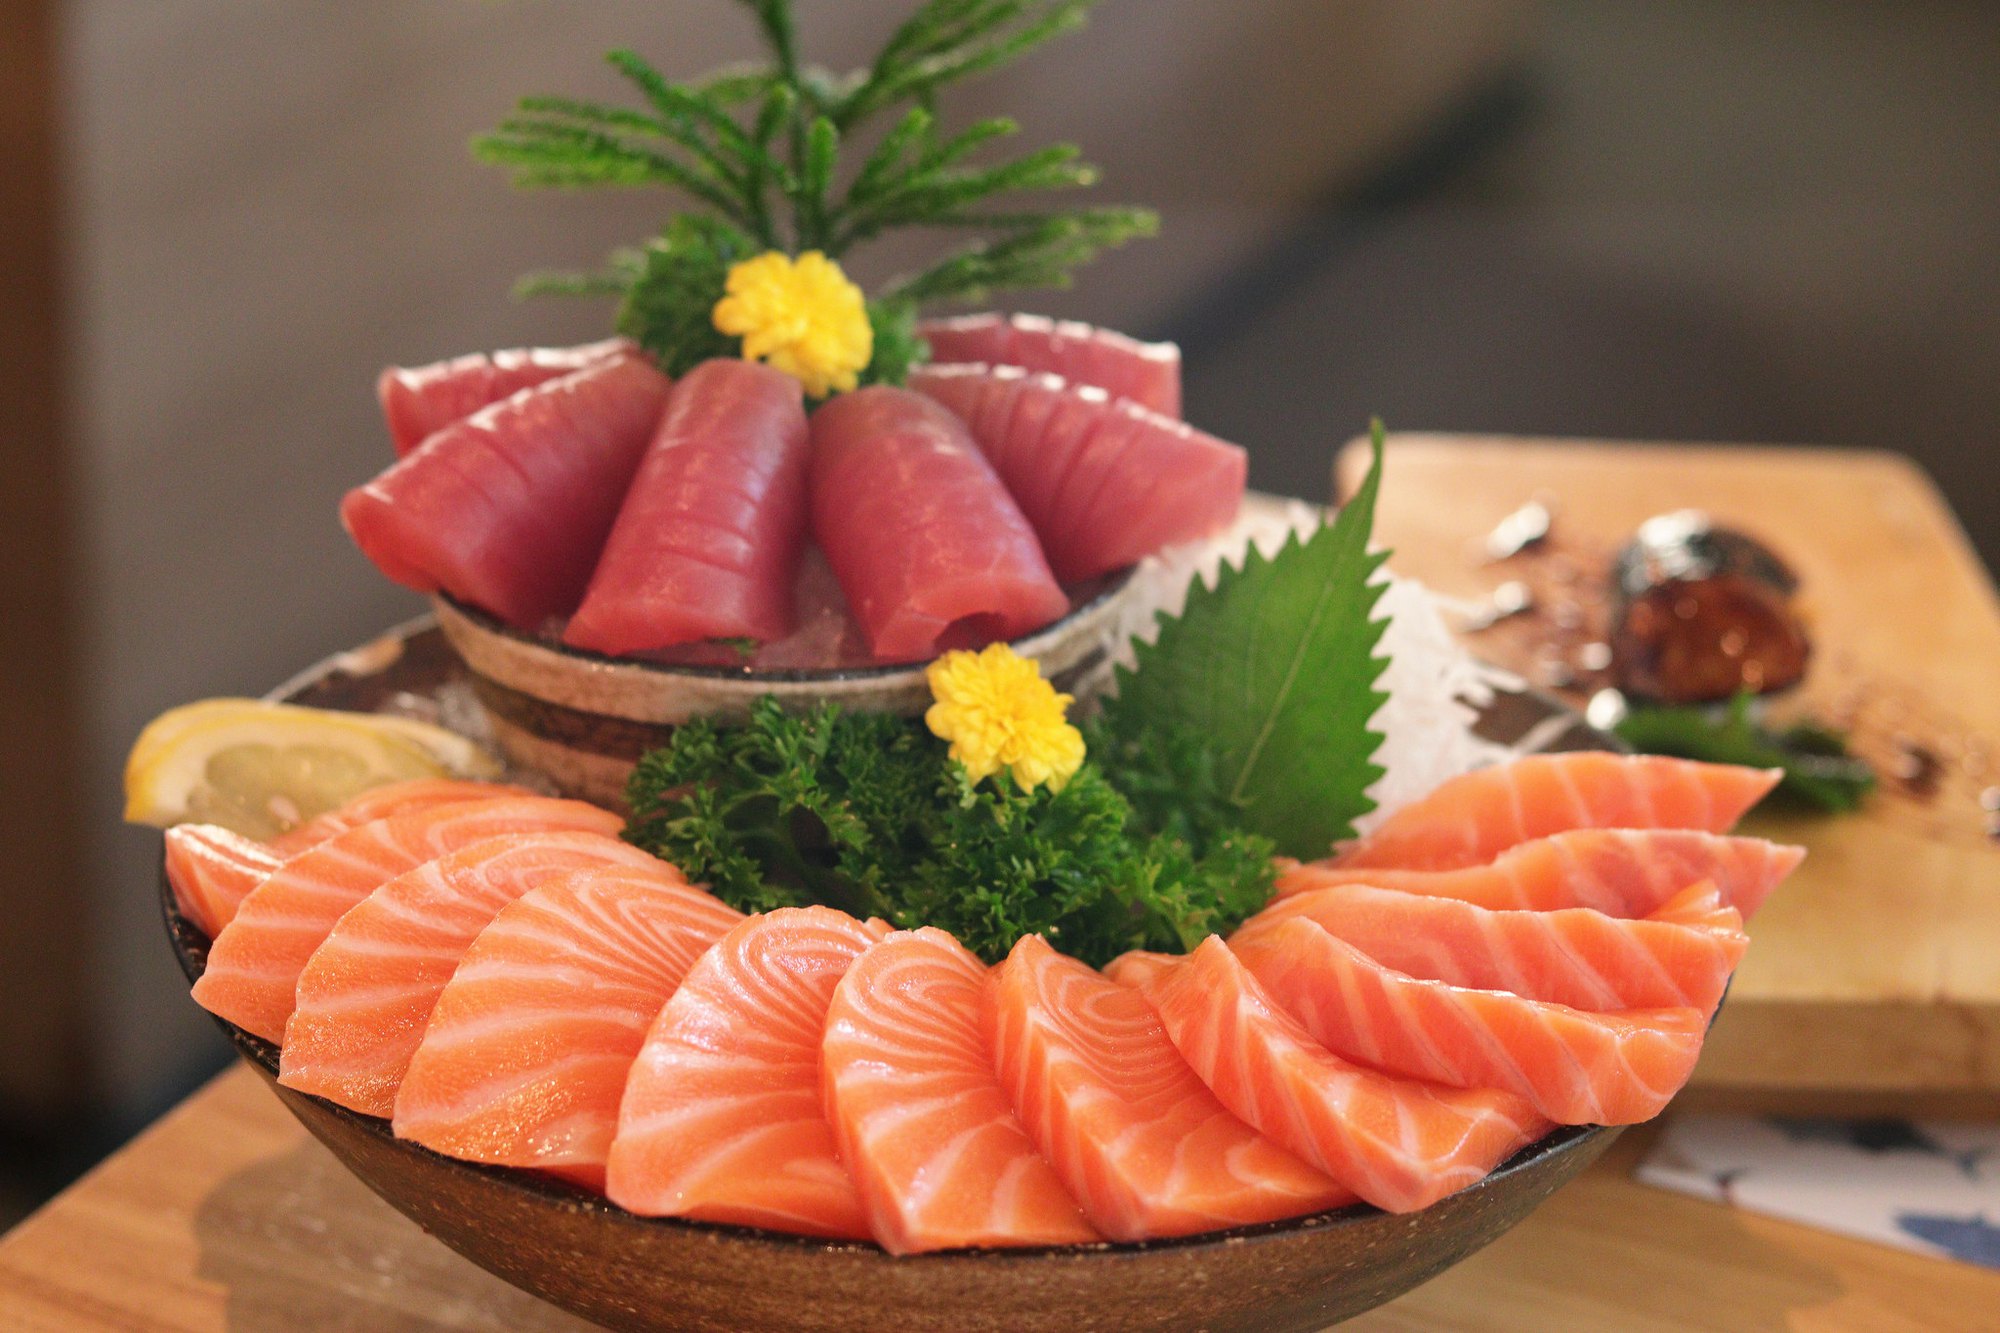 Nổi tiếng với món cá sống, vì sao người Nhật ít bị nhiễm kí sinh trùng? - Ảnh 1.